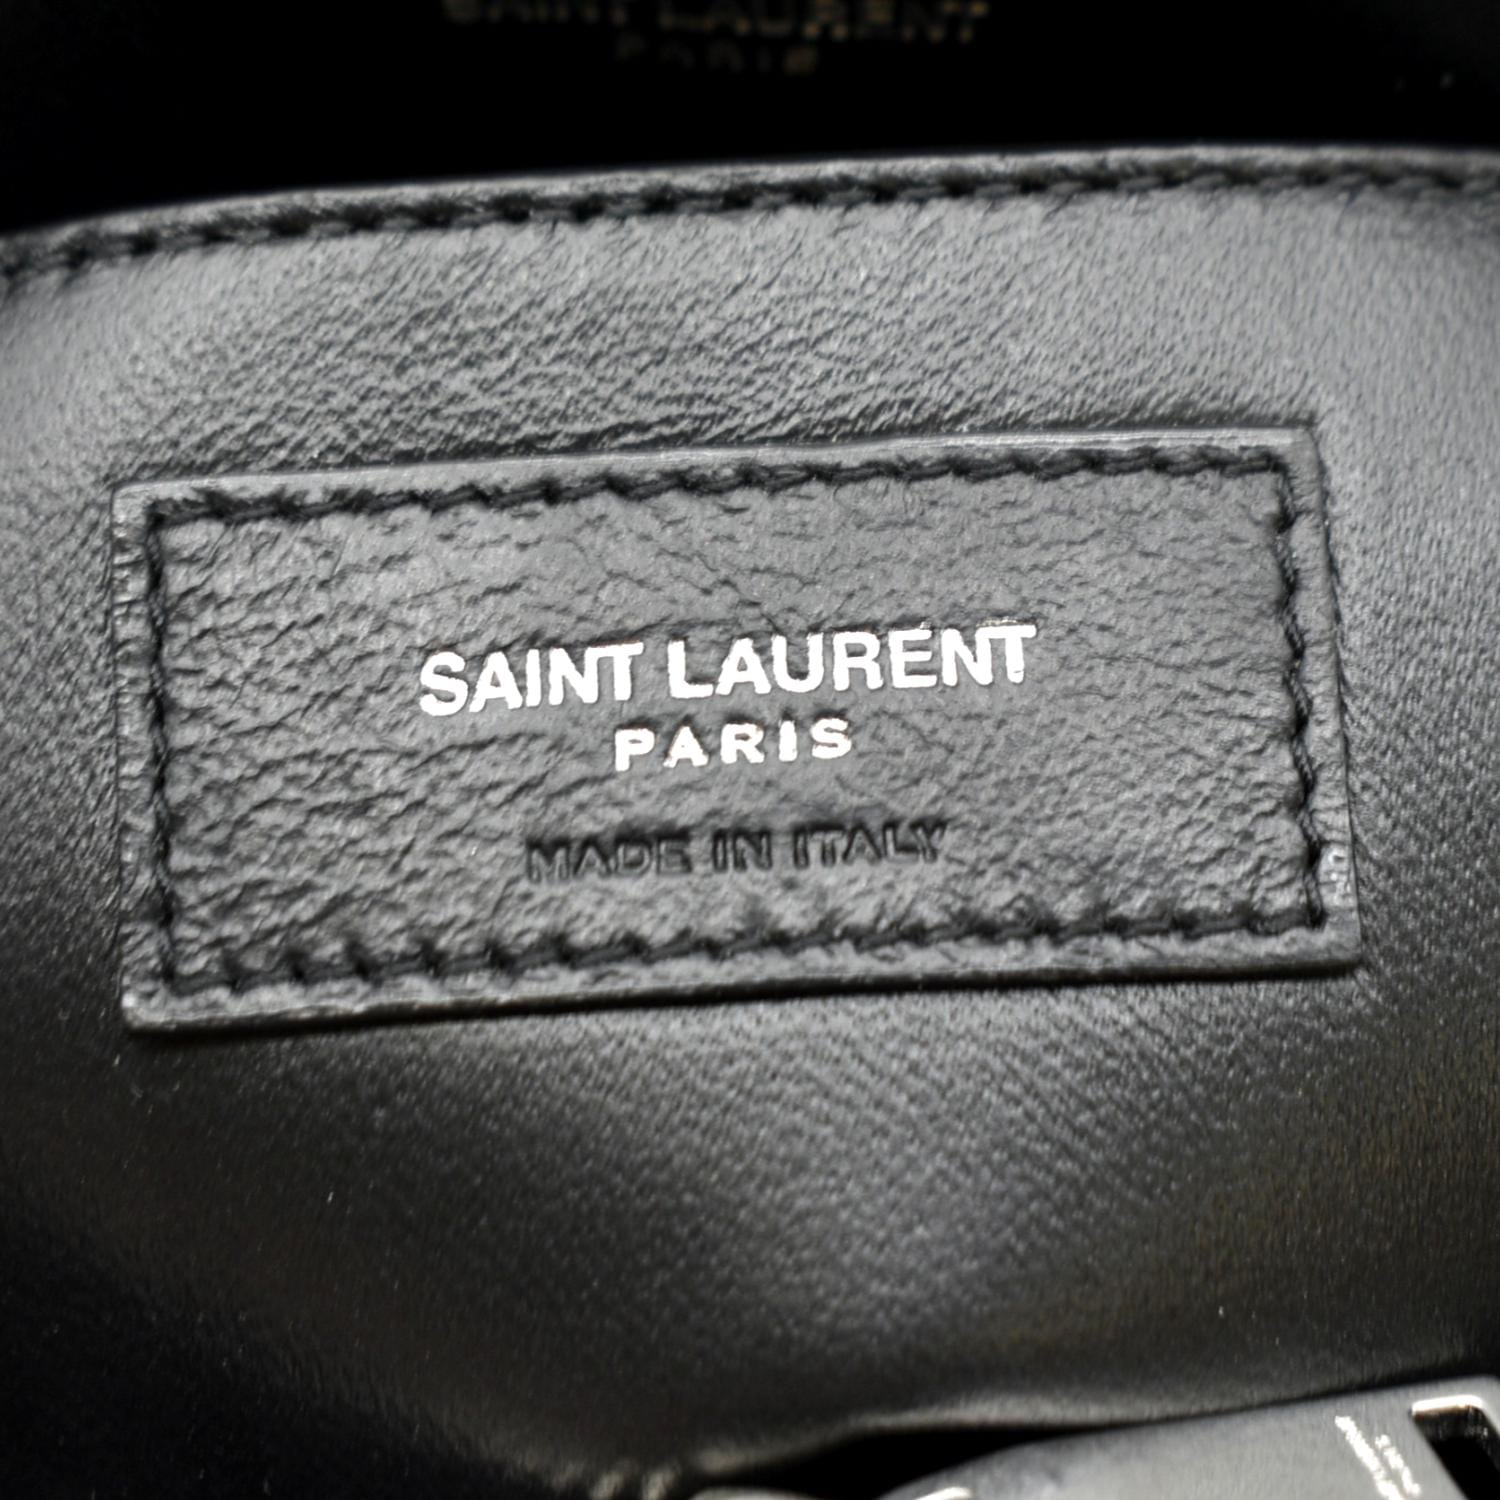 Yves Saint Laurent Original Bag - Black